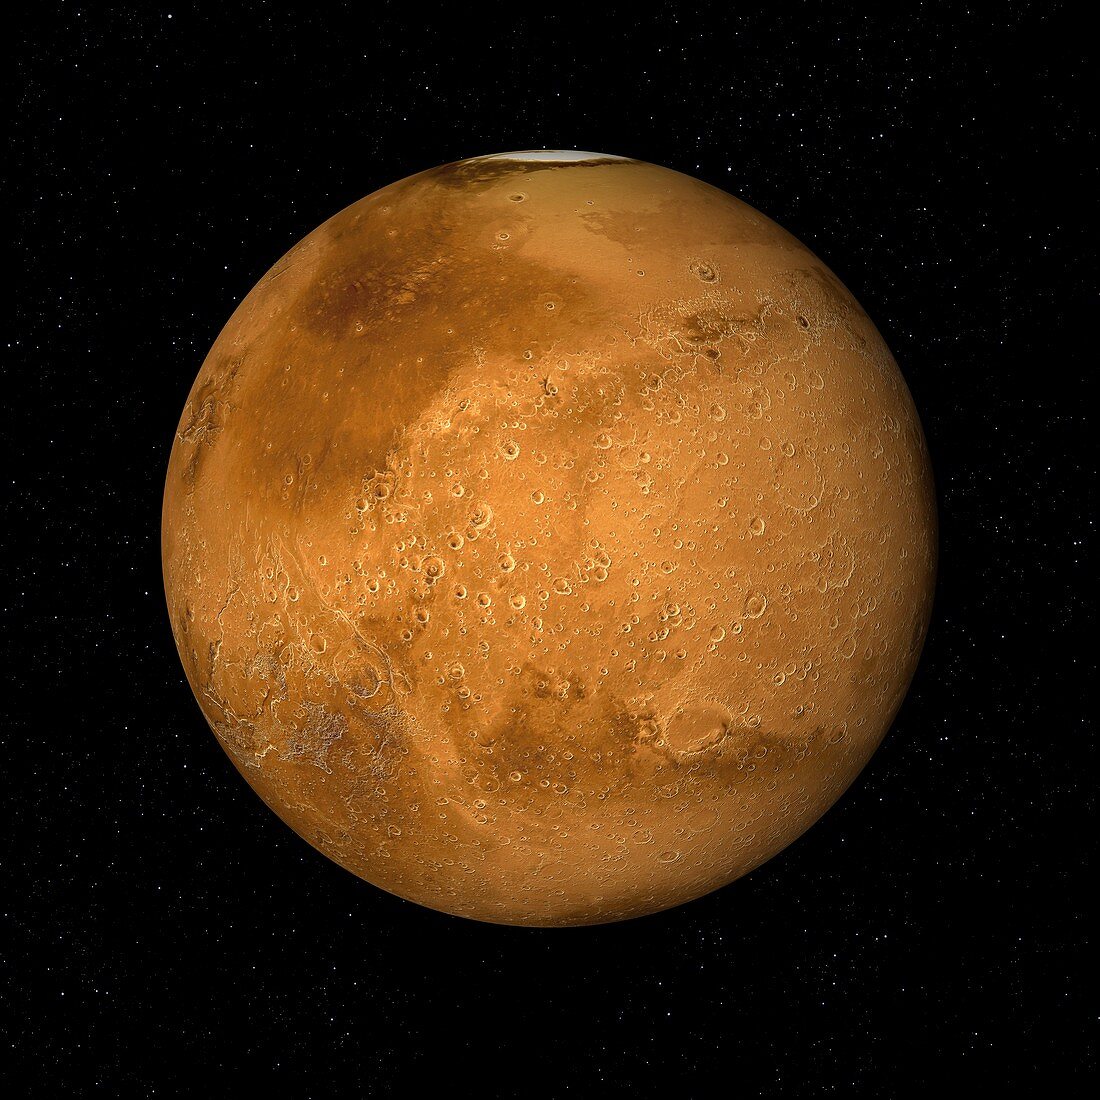 Dark Acidalia Planitia and North Pole, Mars, illustration